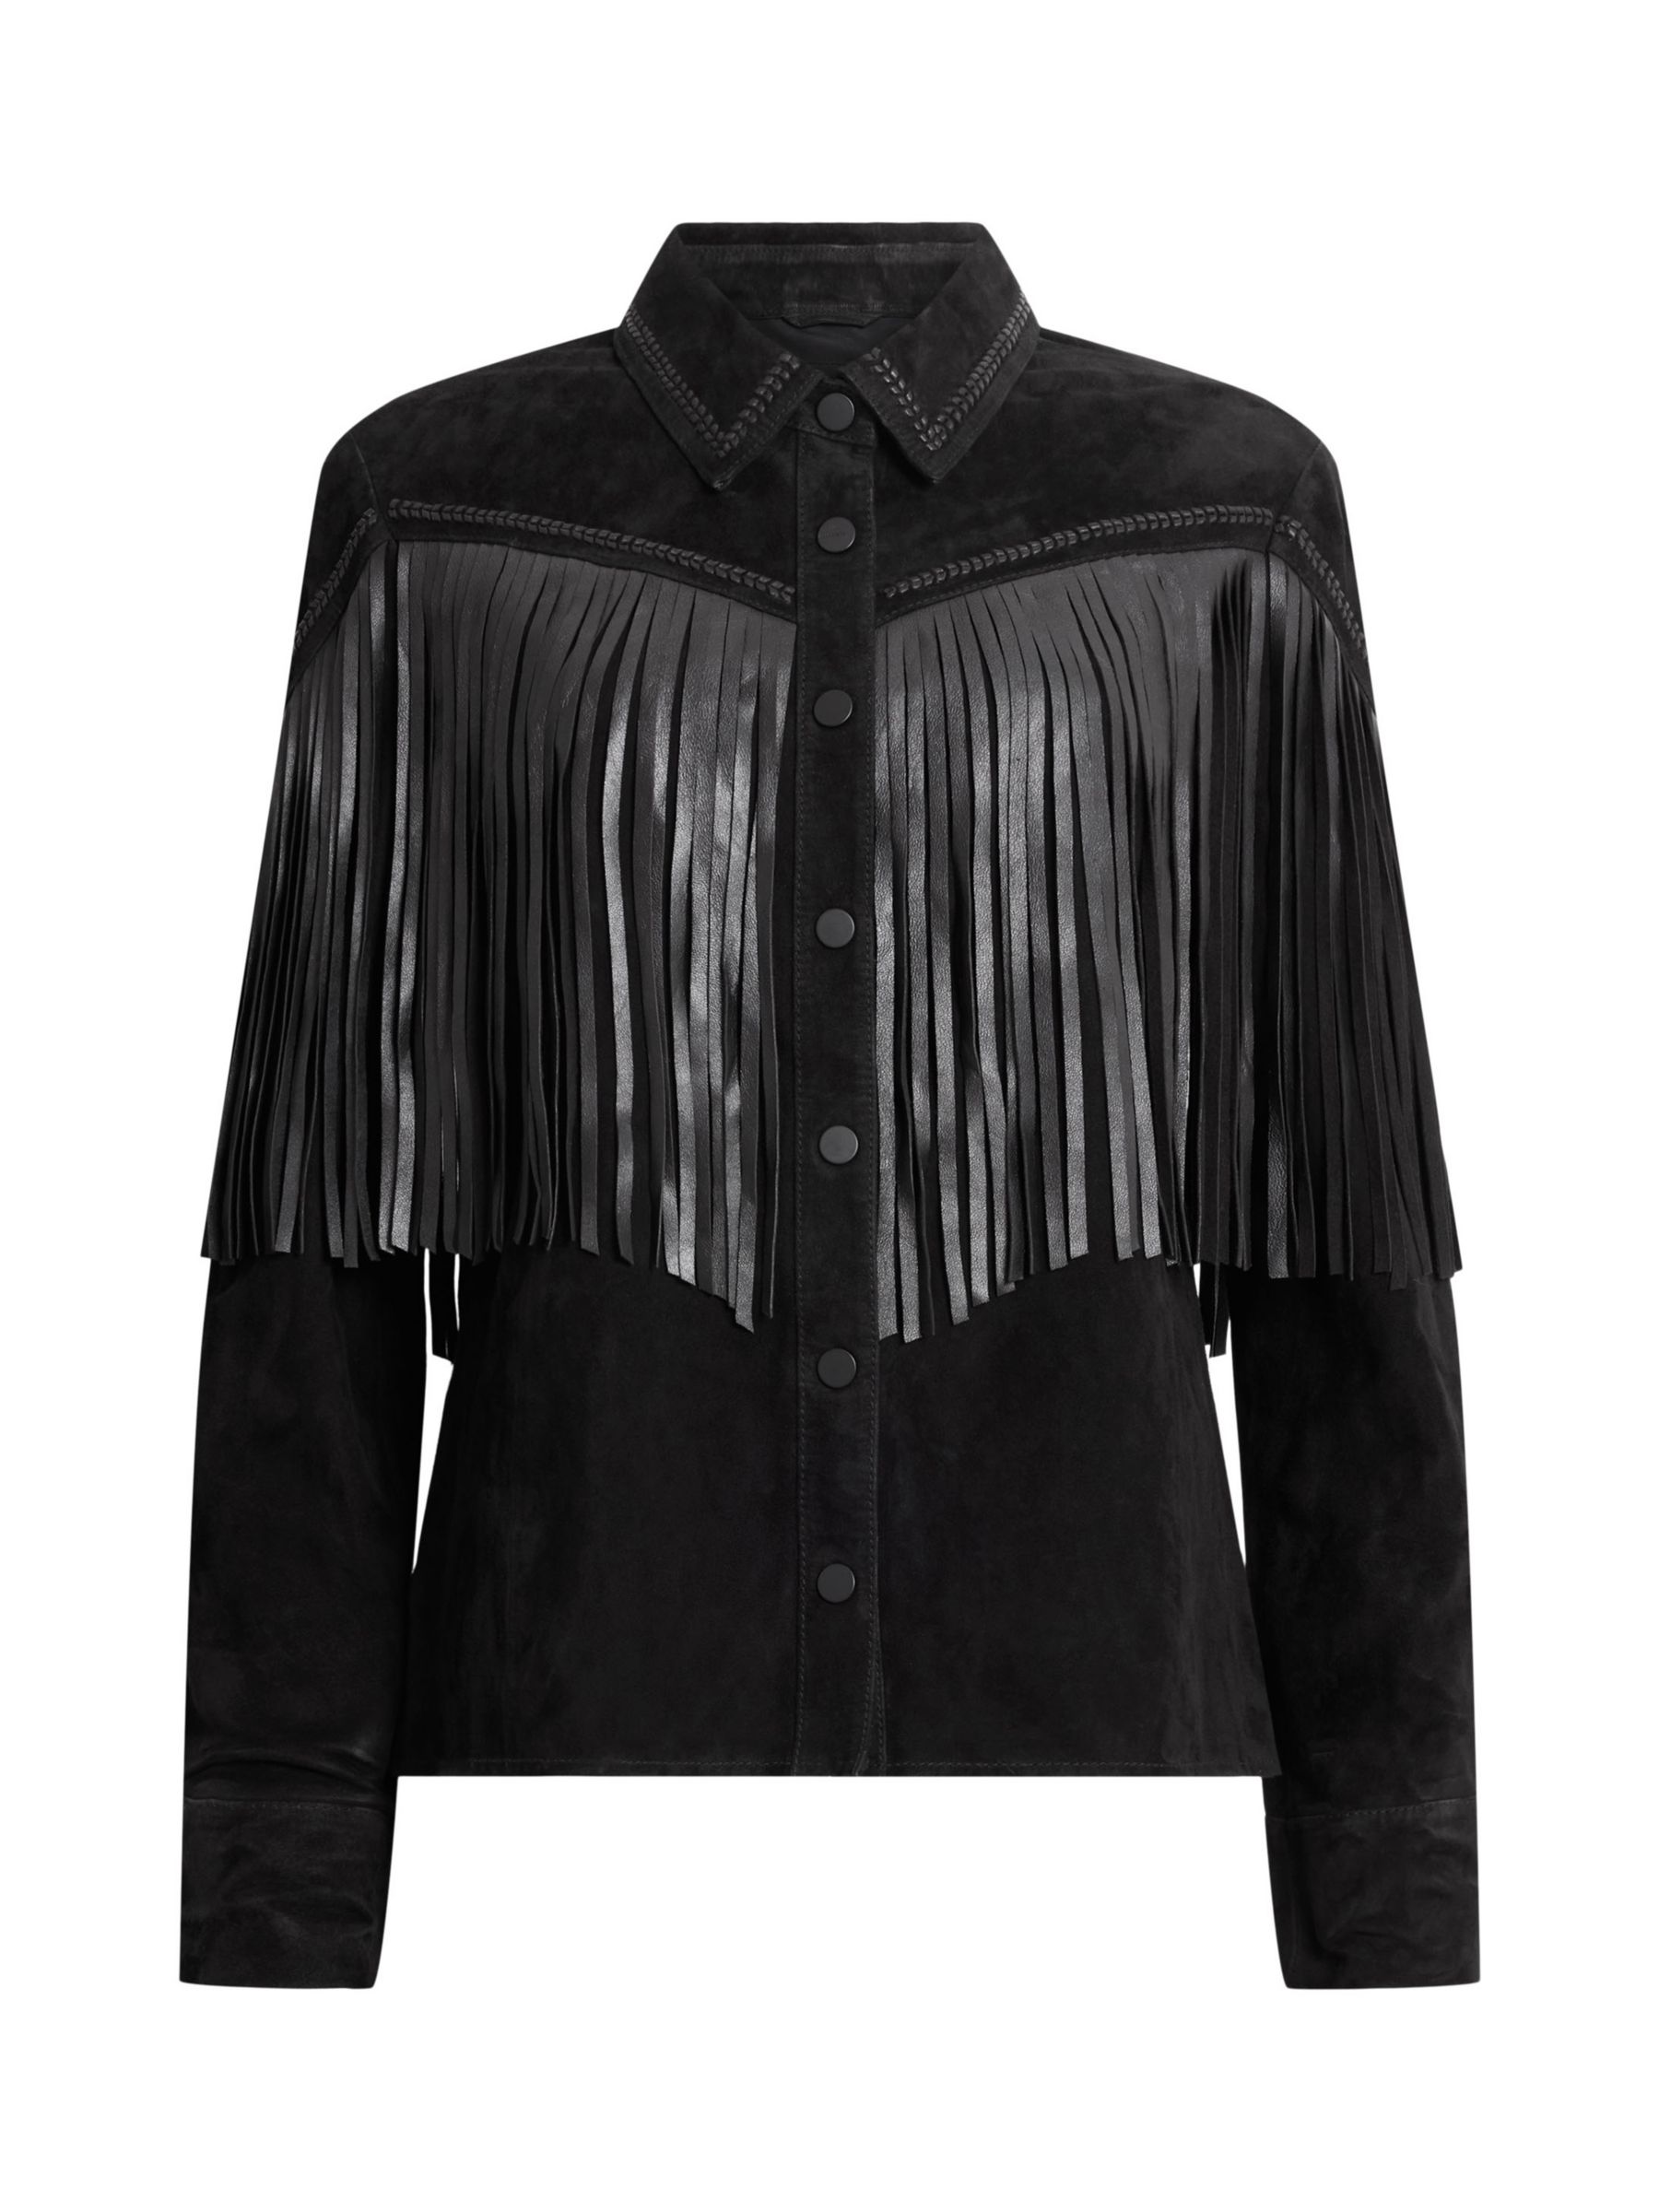 Buy AllSaints Cleo Leather Fringe Western Jacket, Black Online at johnlewis.com